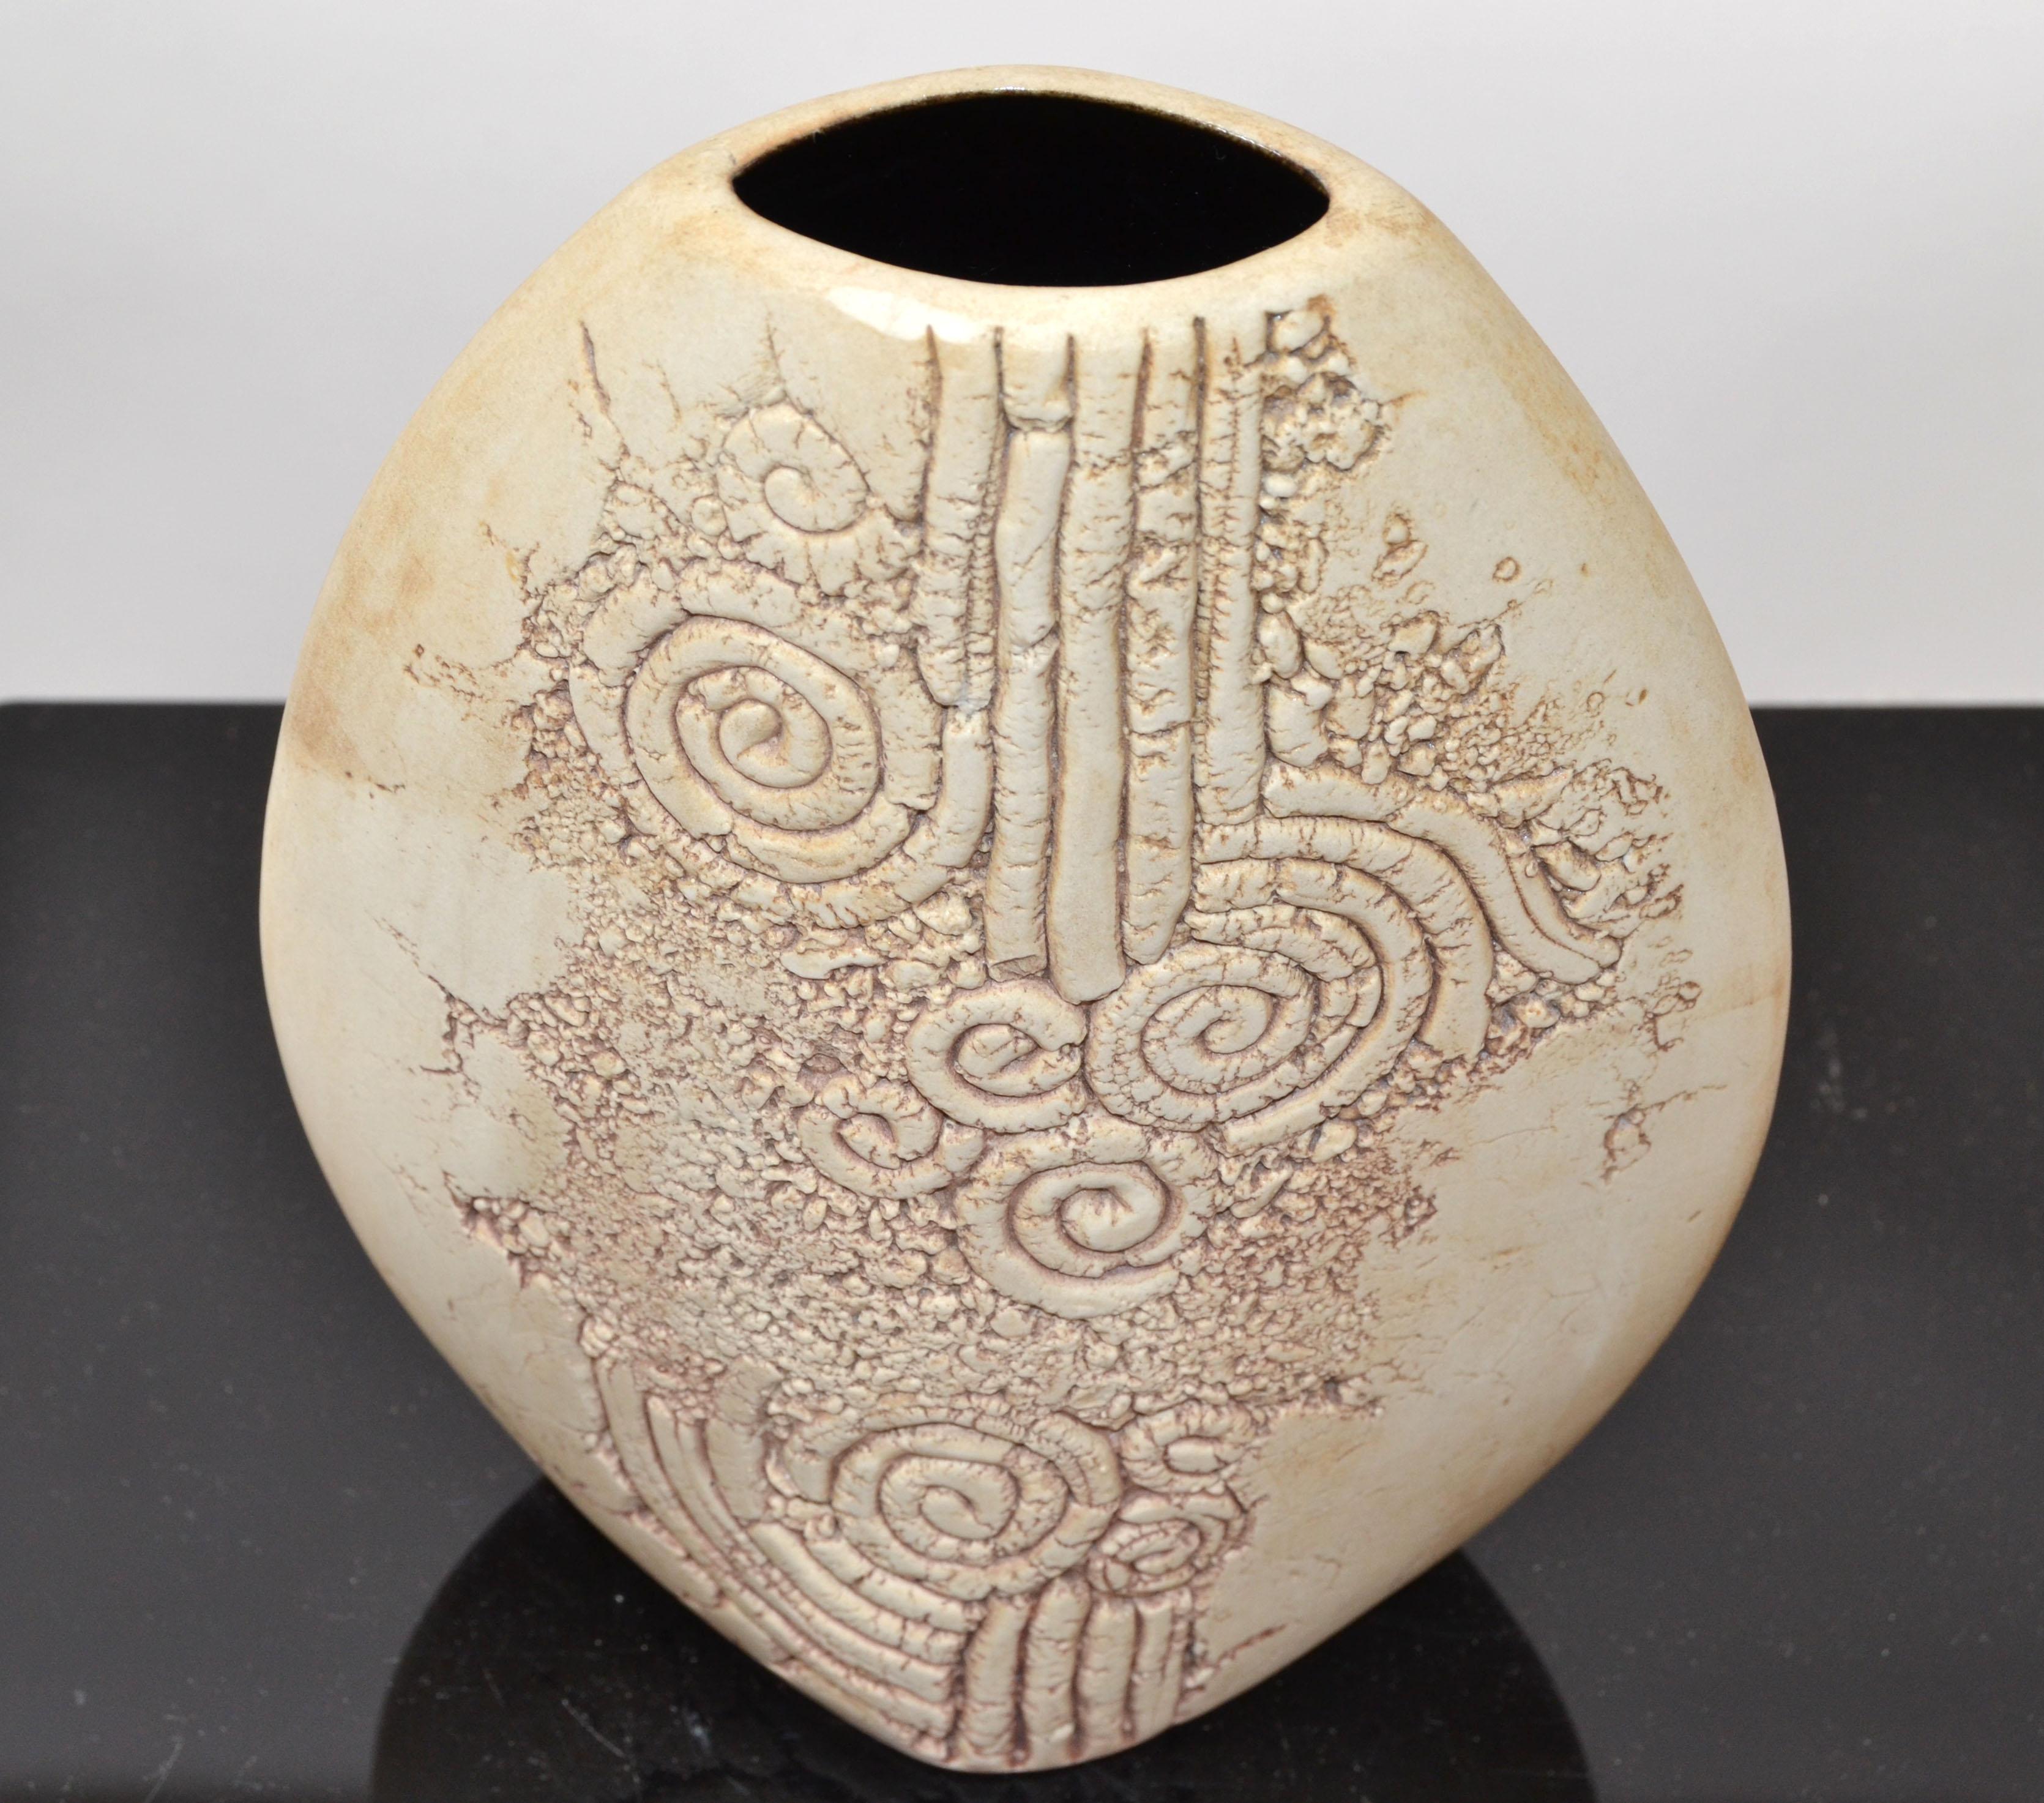 Markierte Malaysia Vintage Steingut handgefertigt braun und Taupe Studio Stück mit der Innenseite glasiert, Studio Piece Vase, Dekanter, Gefäß.
Tenmoku Pottery wurde 1989 gegründet und ist einer der ältesten Keramikhersteller in Malaysia. Mit einer